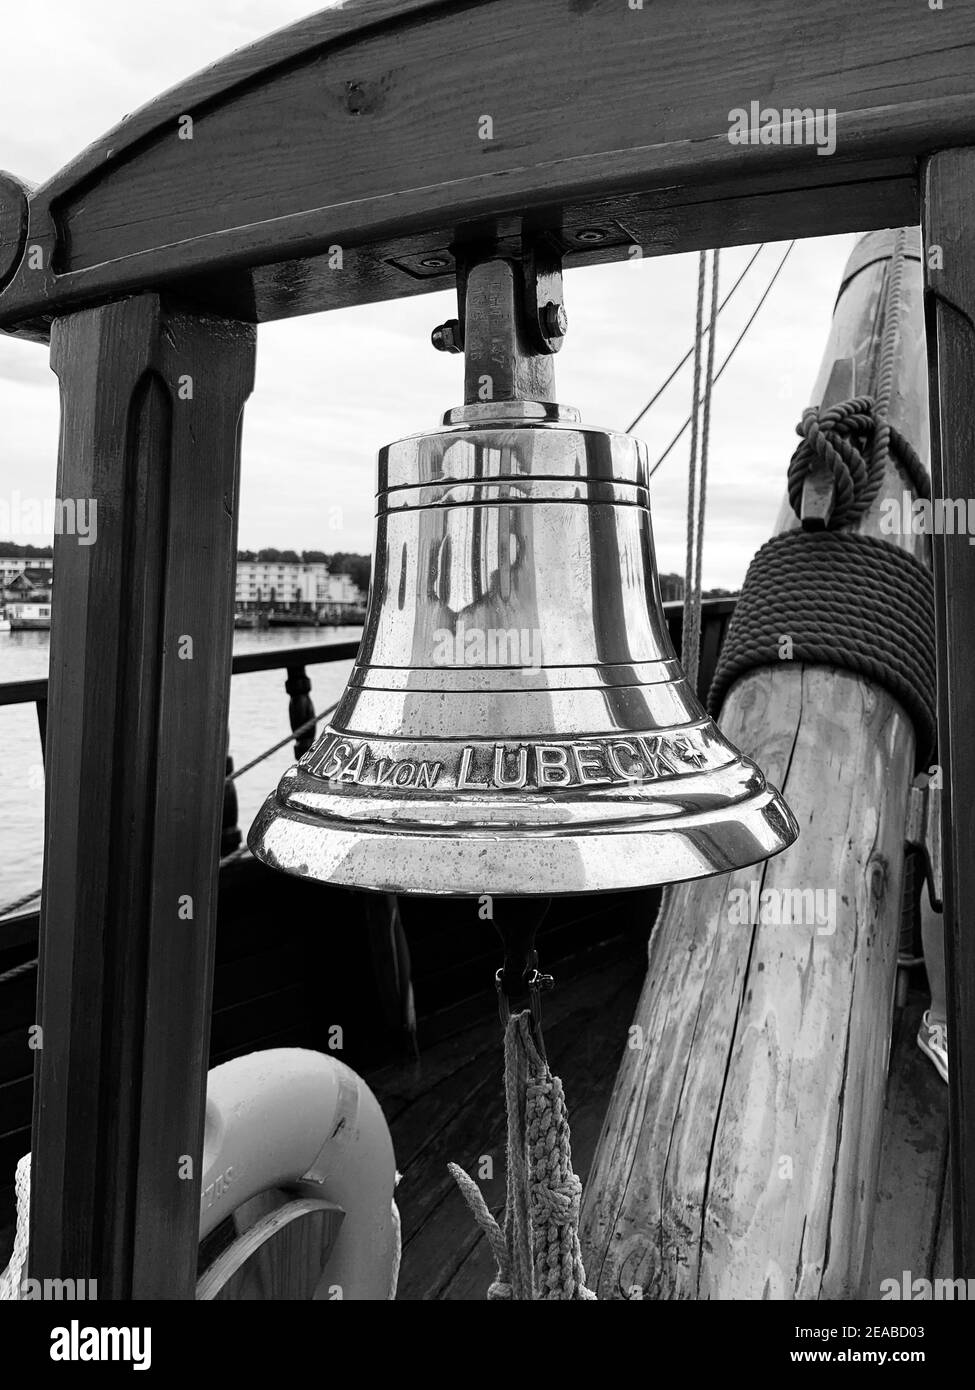 Campana della nave mercantile storica Lisa von Lübeck Foto Stock